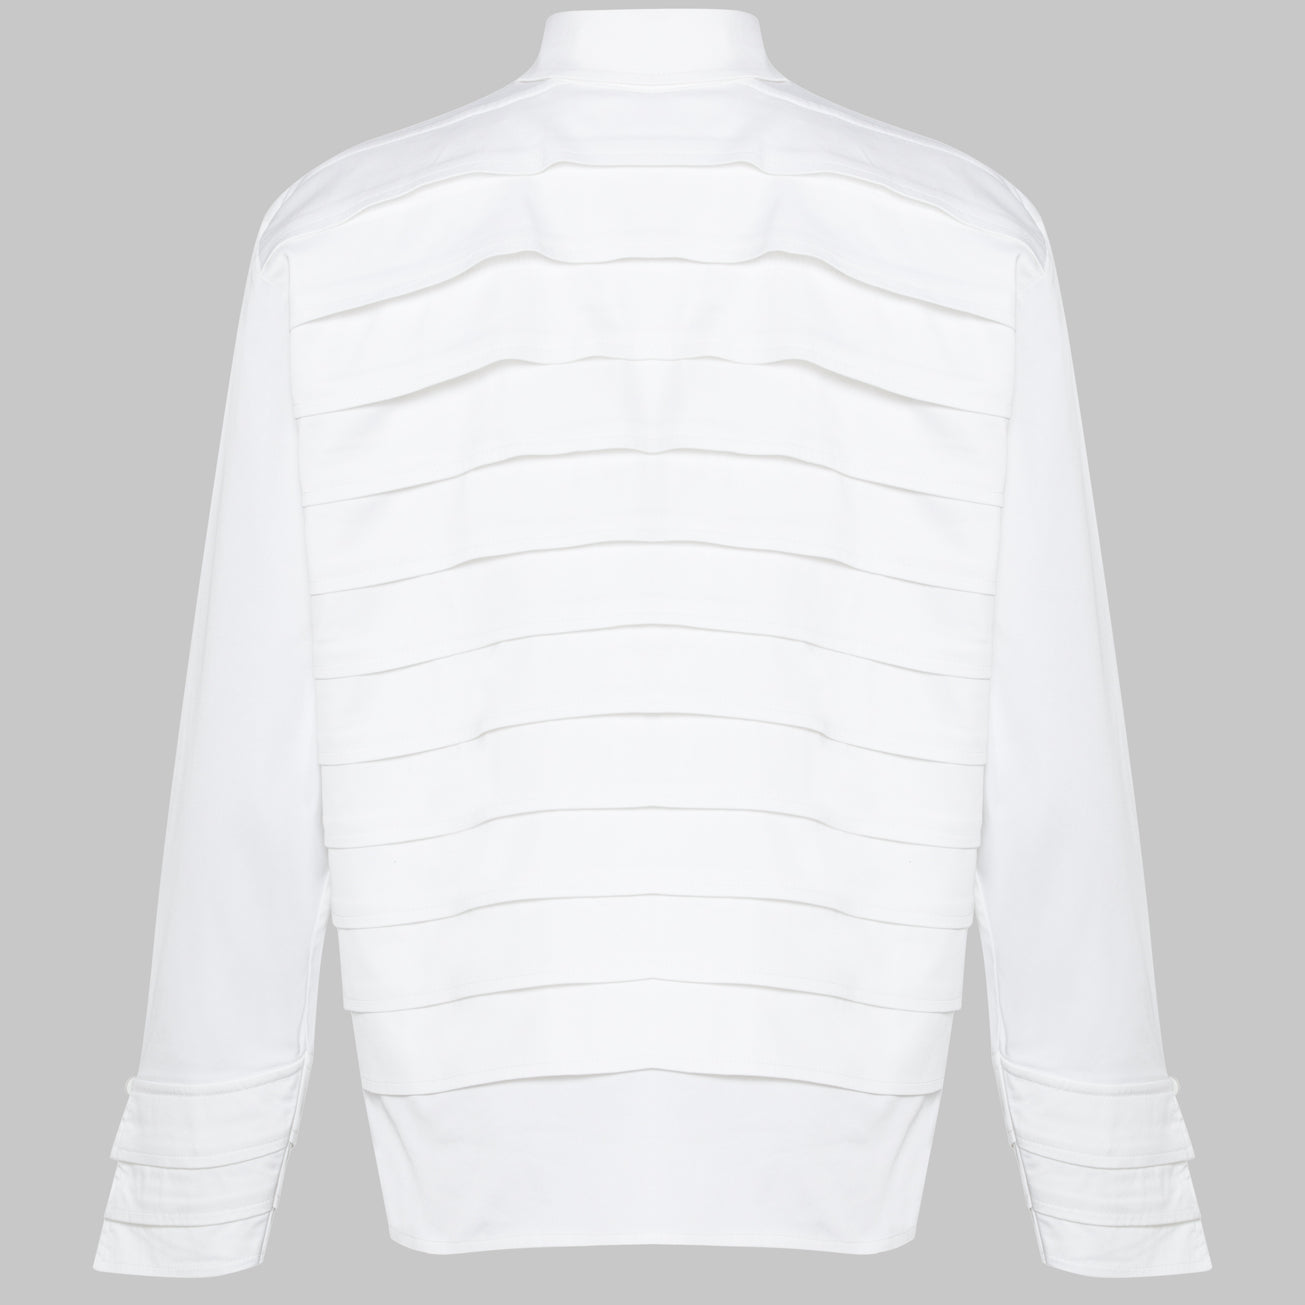 White Collar Jacket
